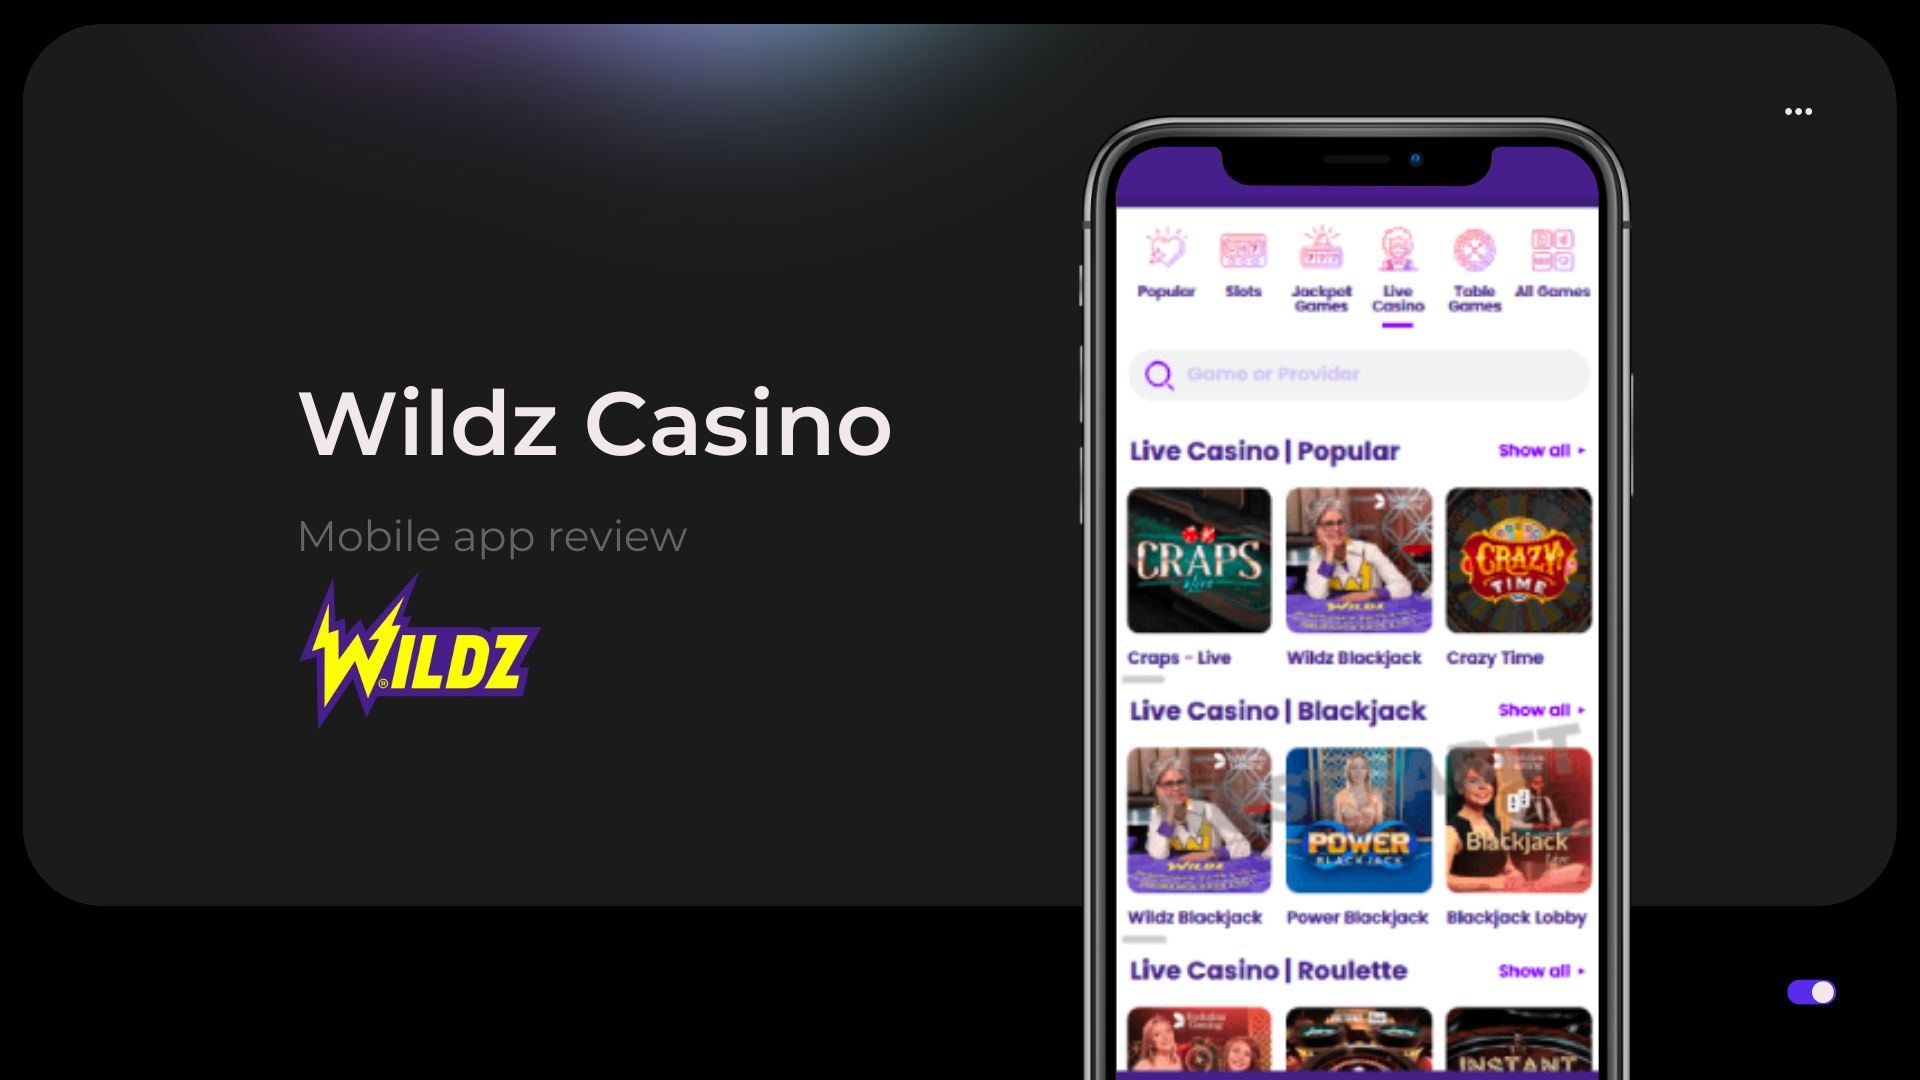 Info about Wildz Casino App